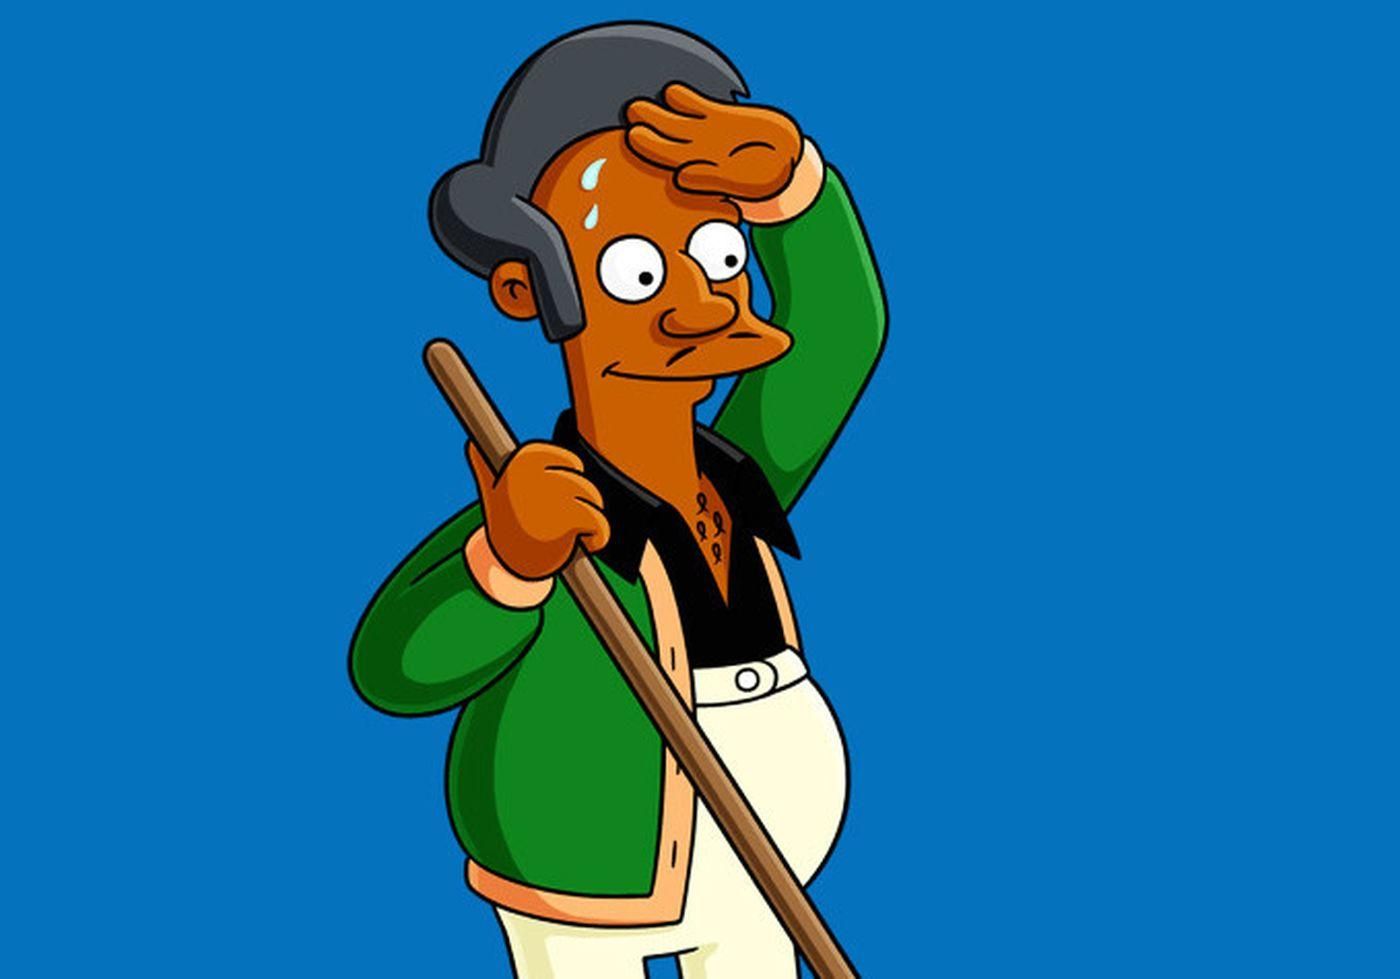 Создатели "Симпсонов" могут убрать одного из персонажей по обвинению в расизме